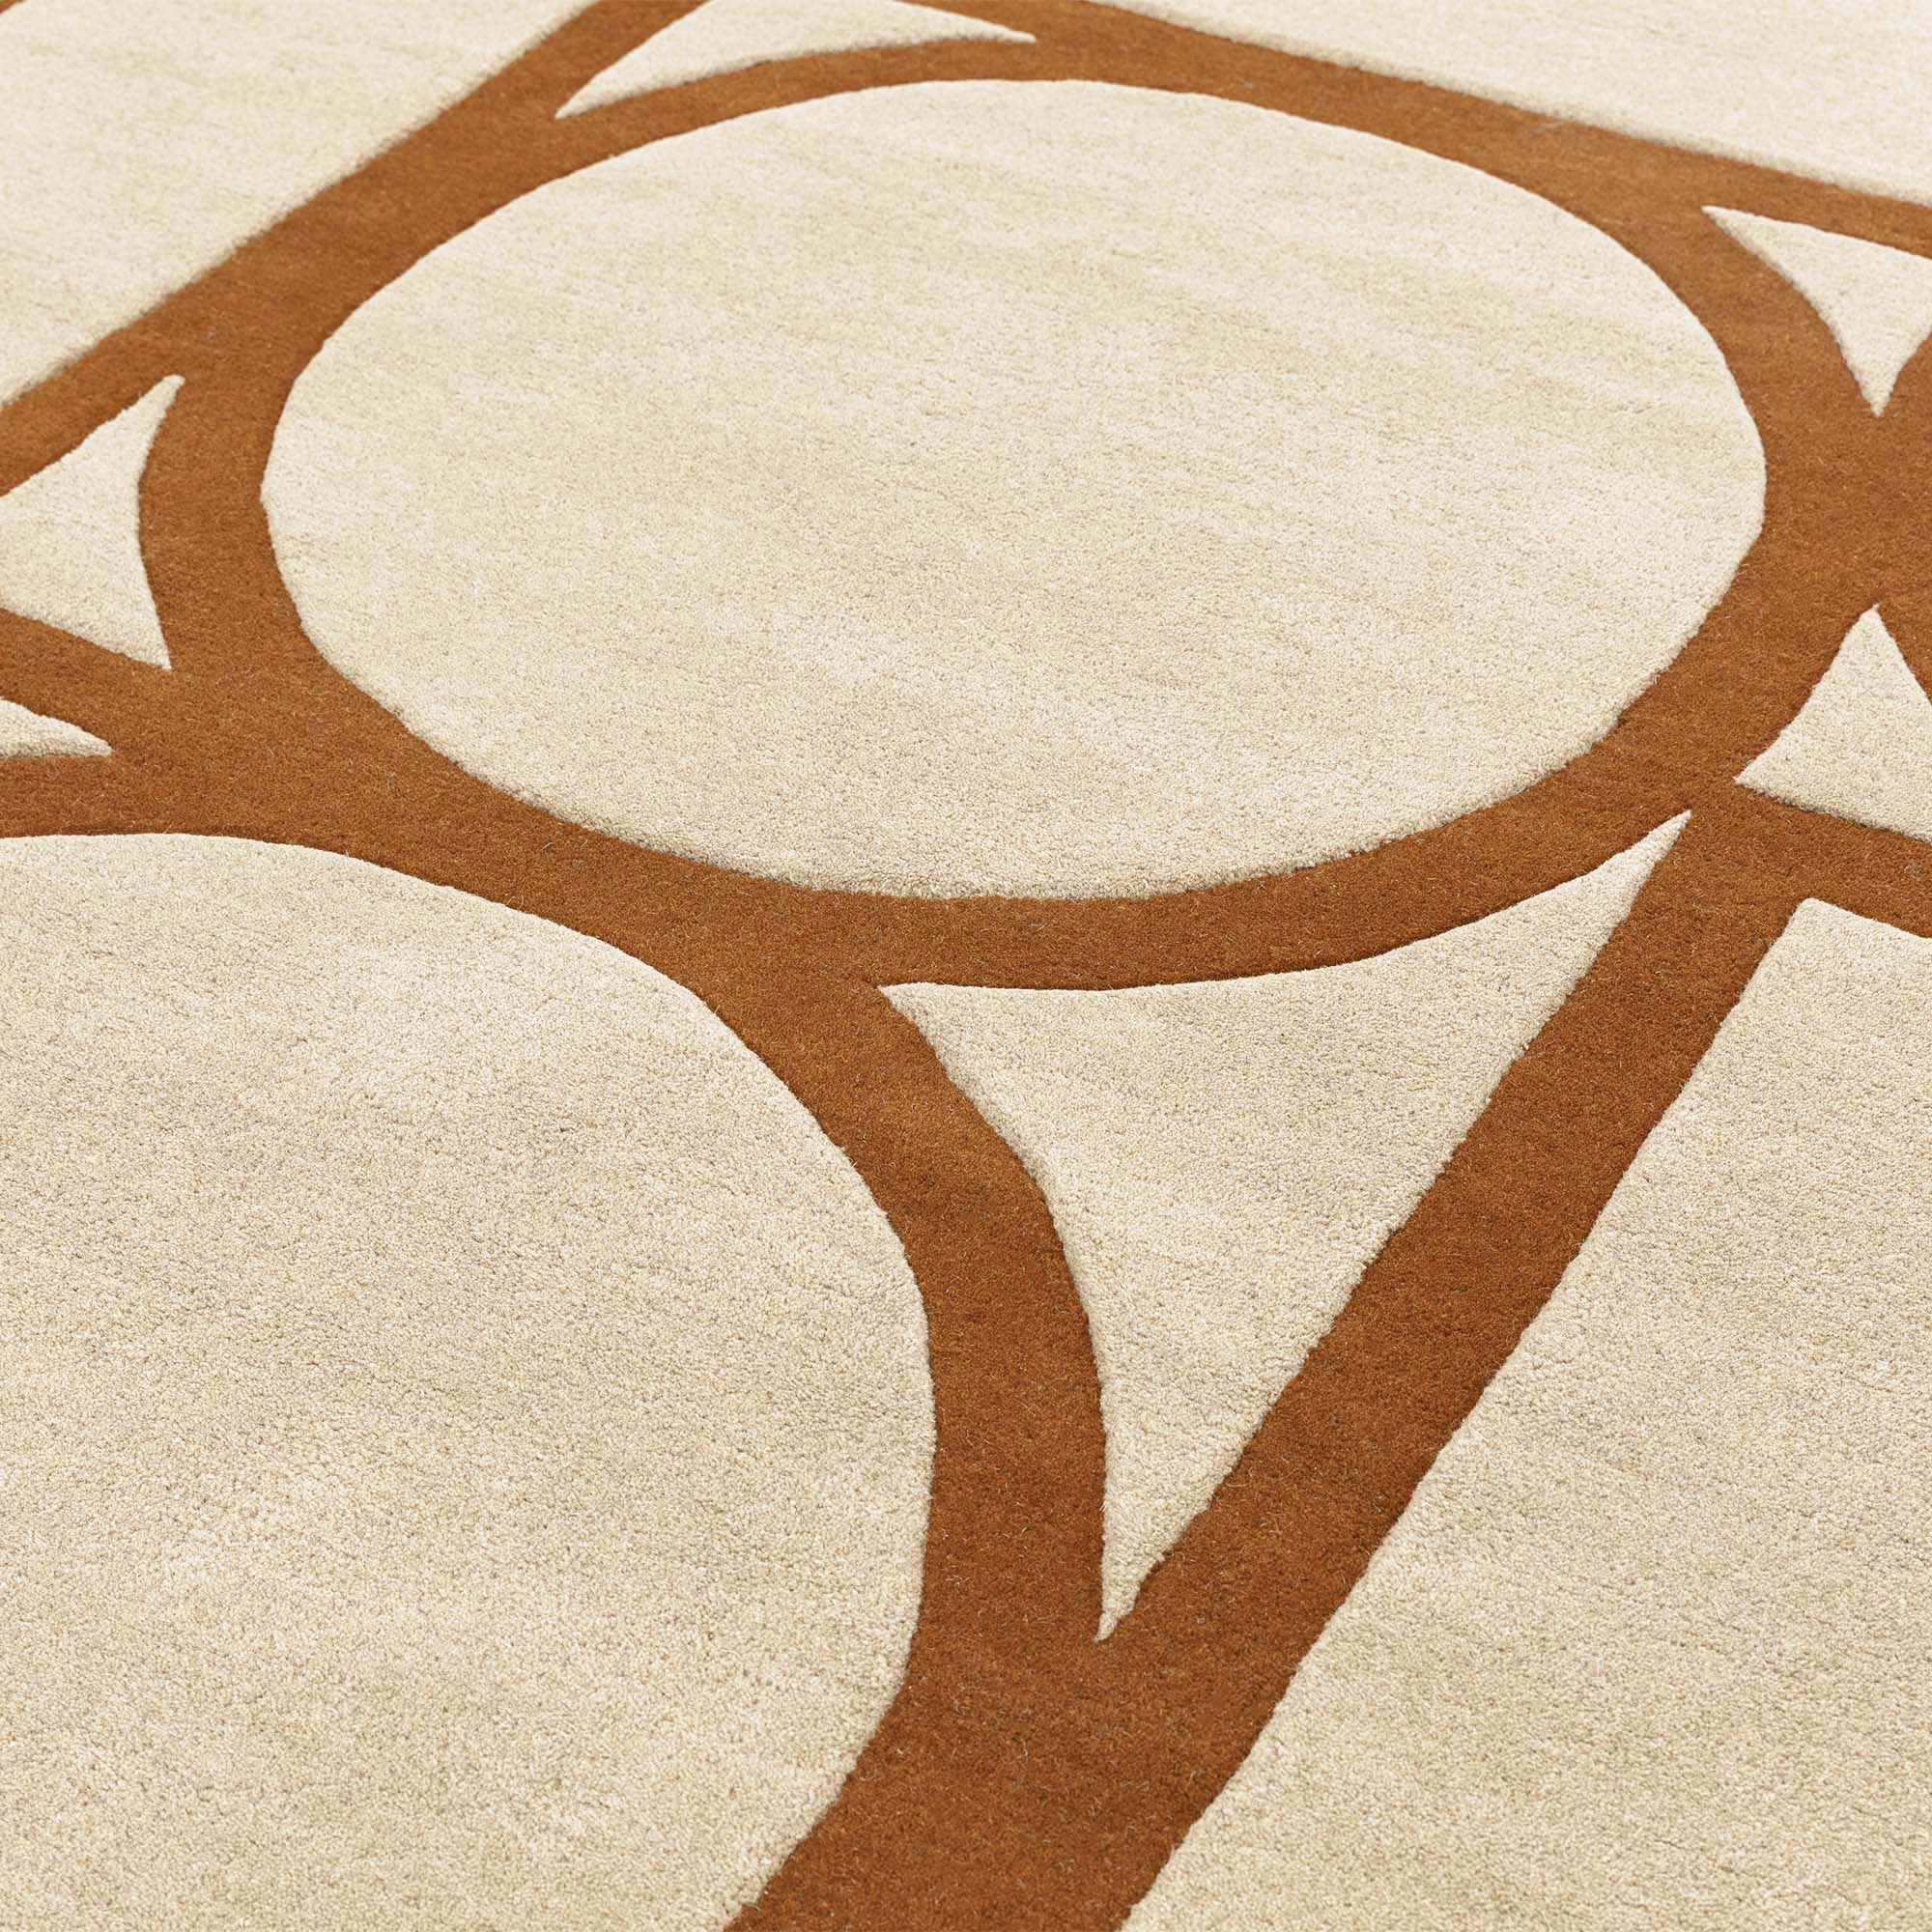 Contemporary Design Metro Rust orange rug